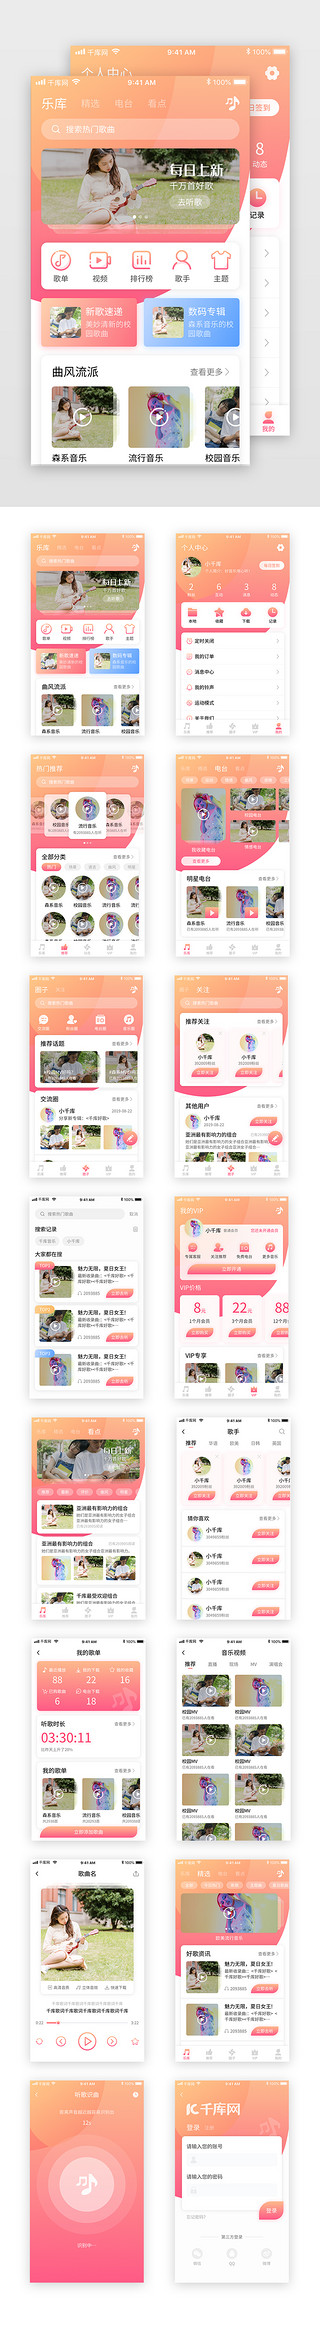 橙色模版UI设计素材_粉色清新社交娱乐音乐听歌app套图